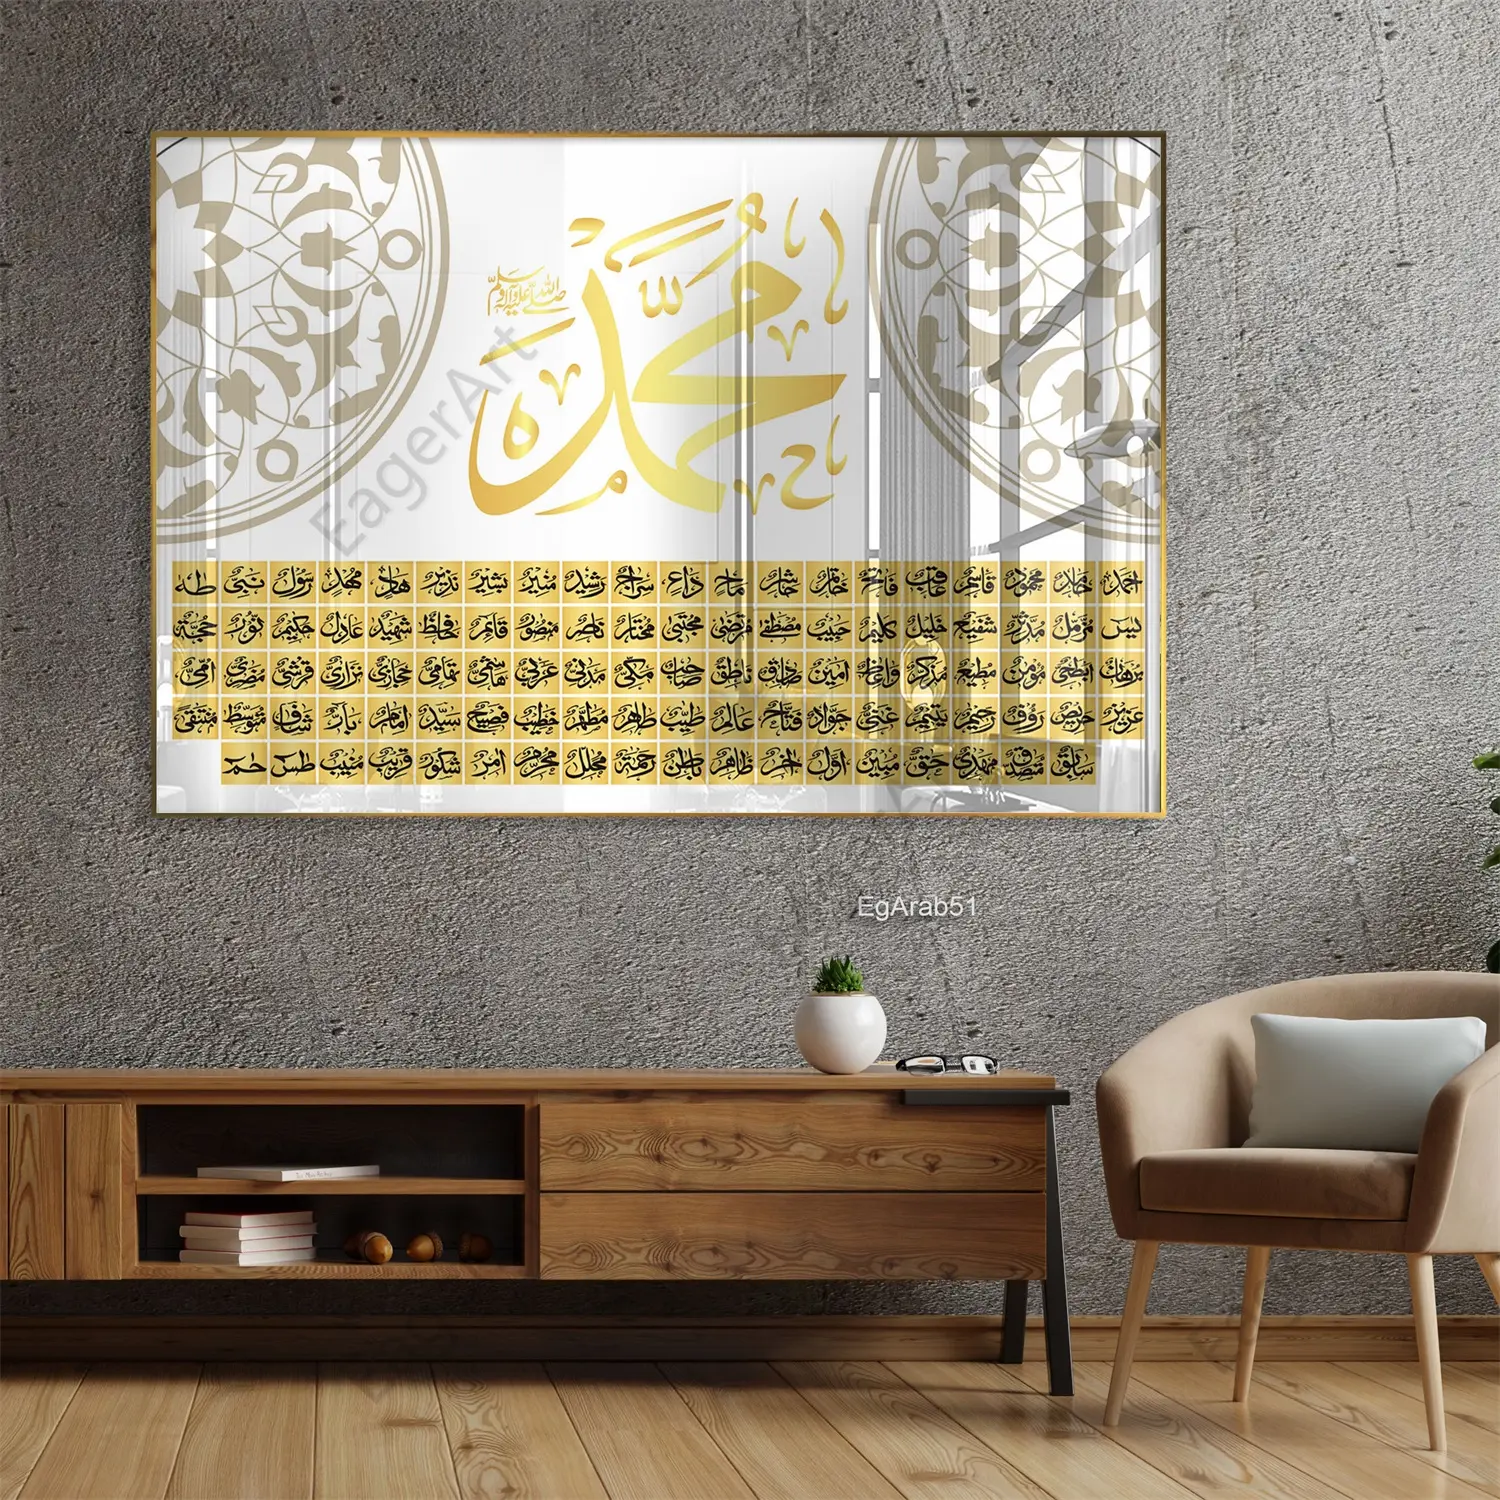 أرتونيون مسلم ديكور منزلي إسلامي فن عربي 98 خط مطبوع لوحات إسلامية